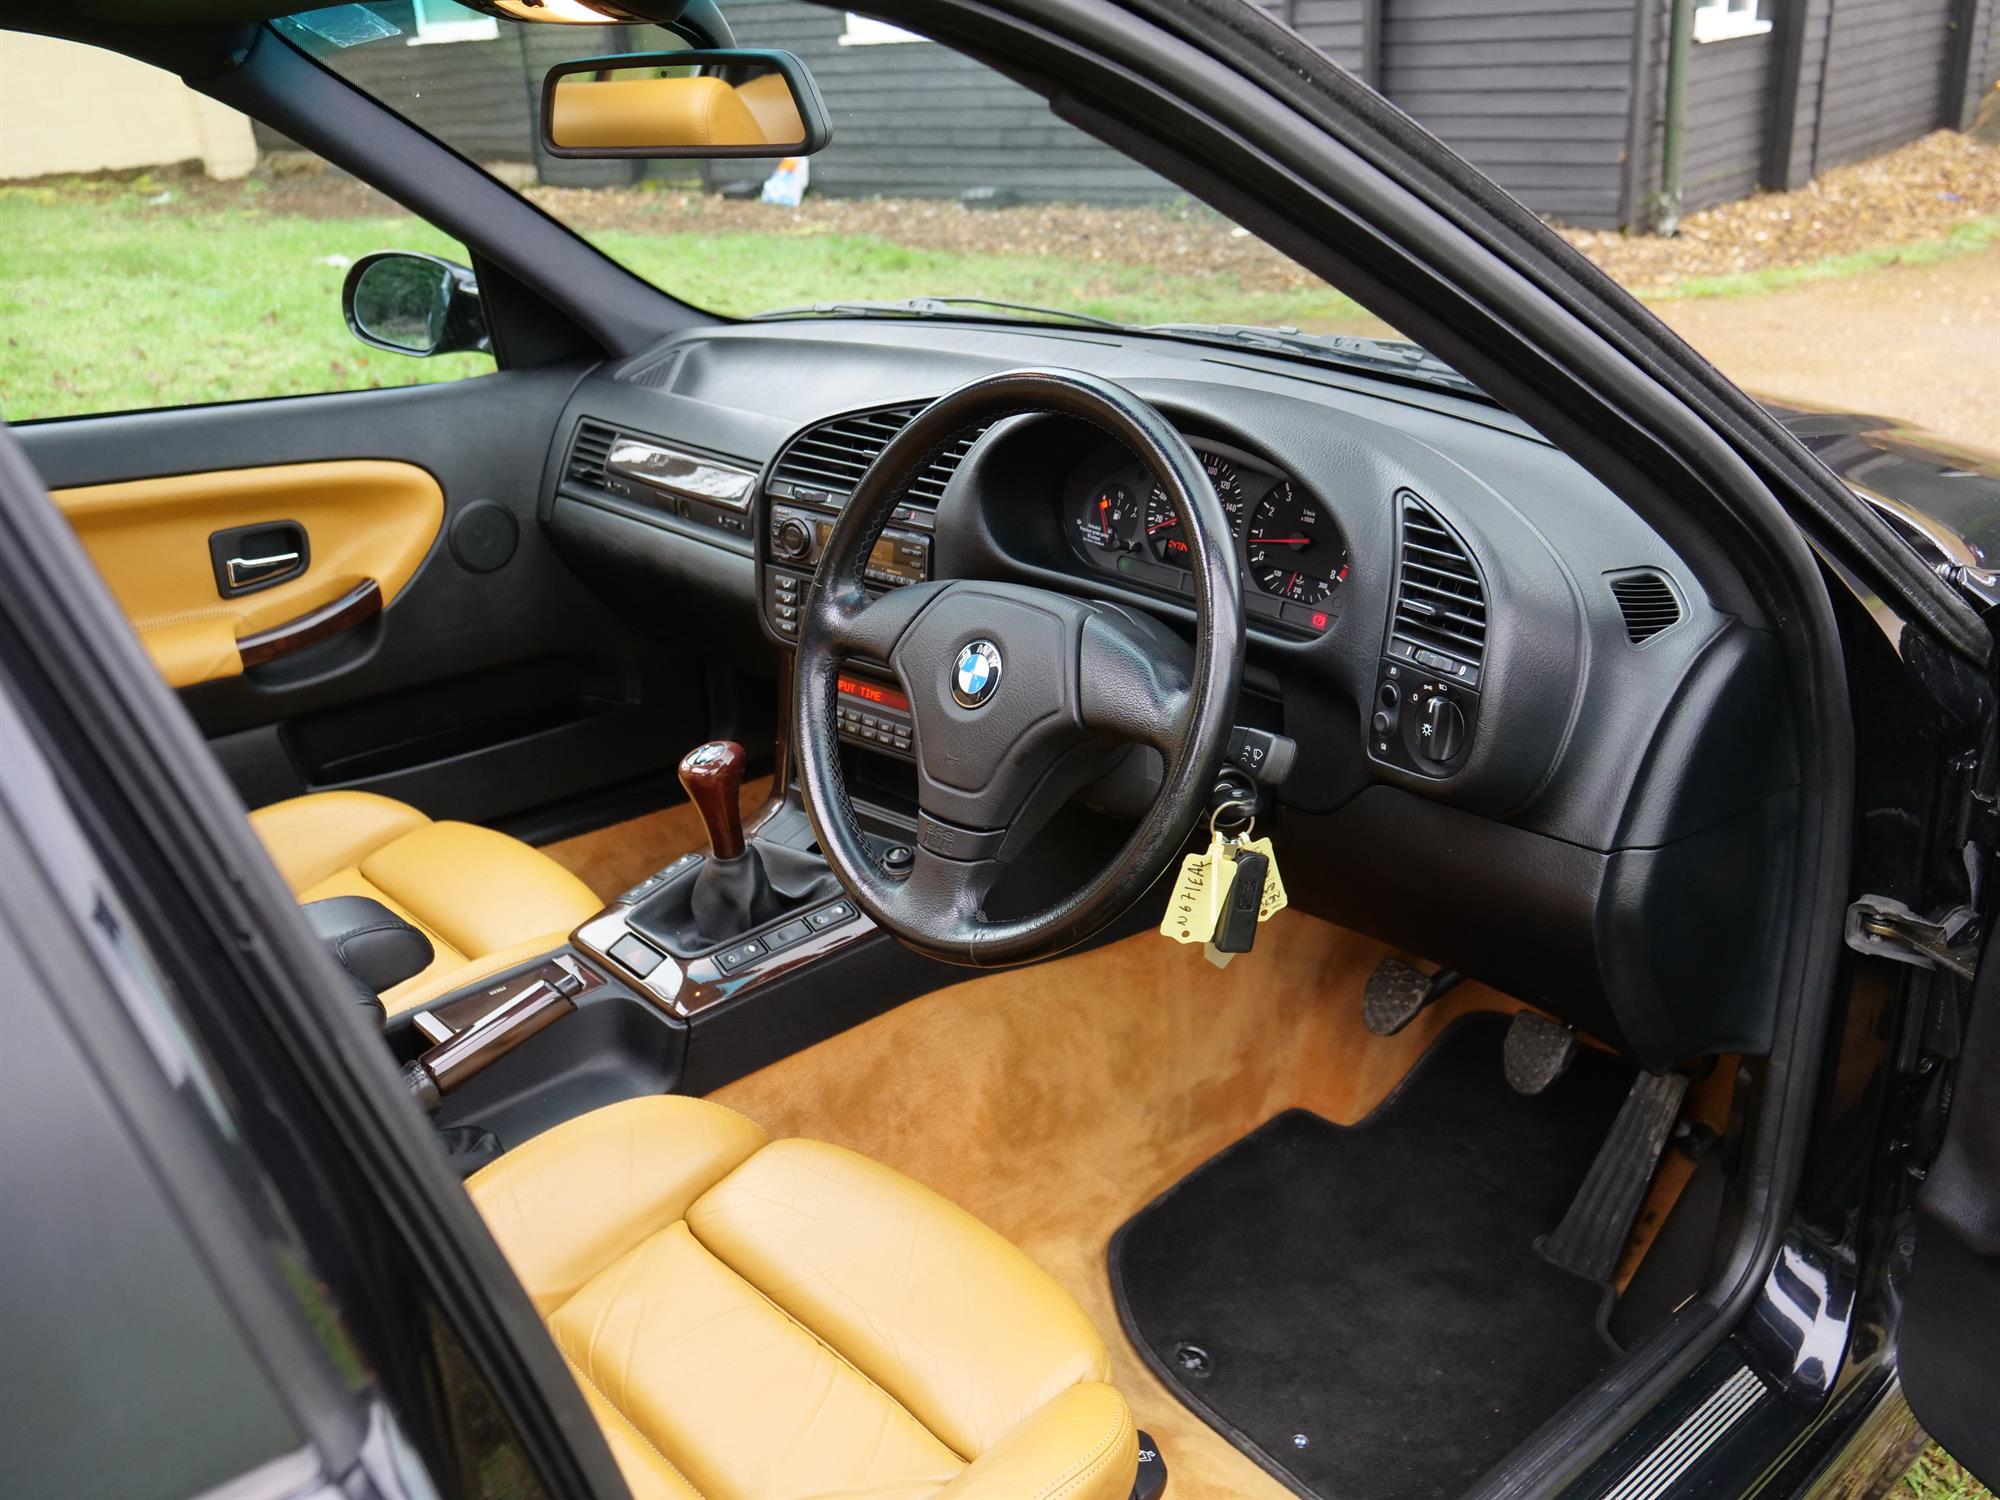 1996 BMW M3 Evolution (E36) - Image 5 of 18